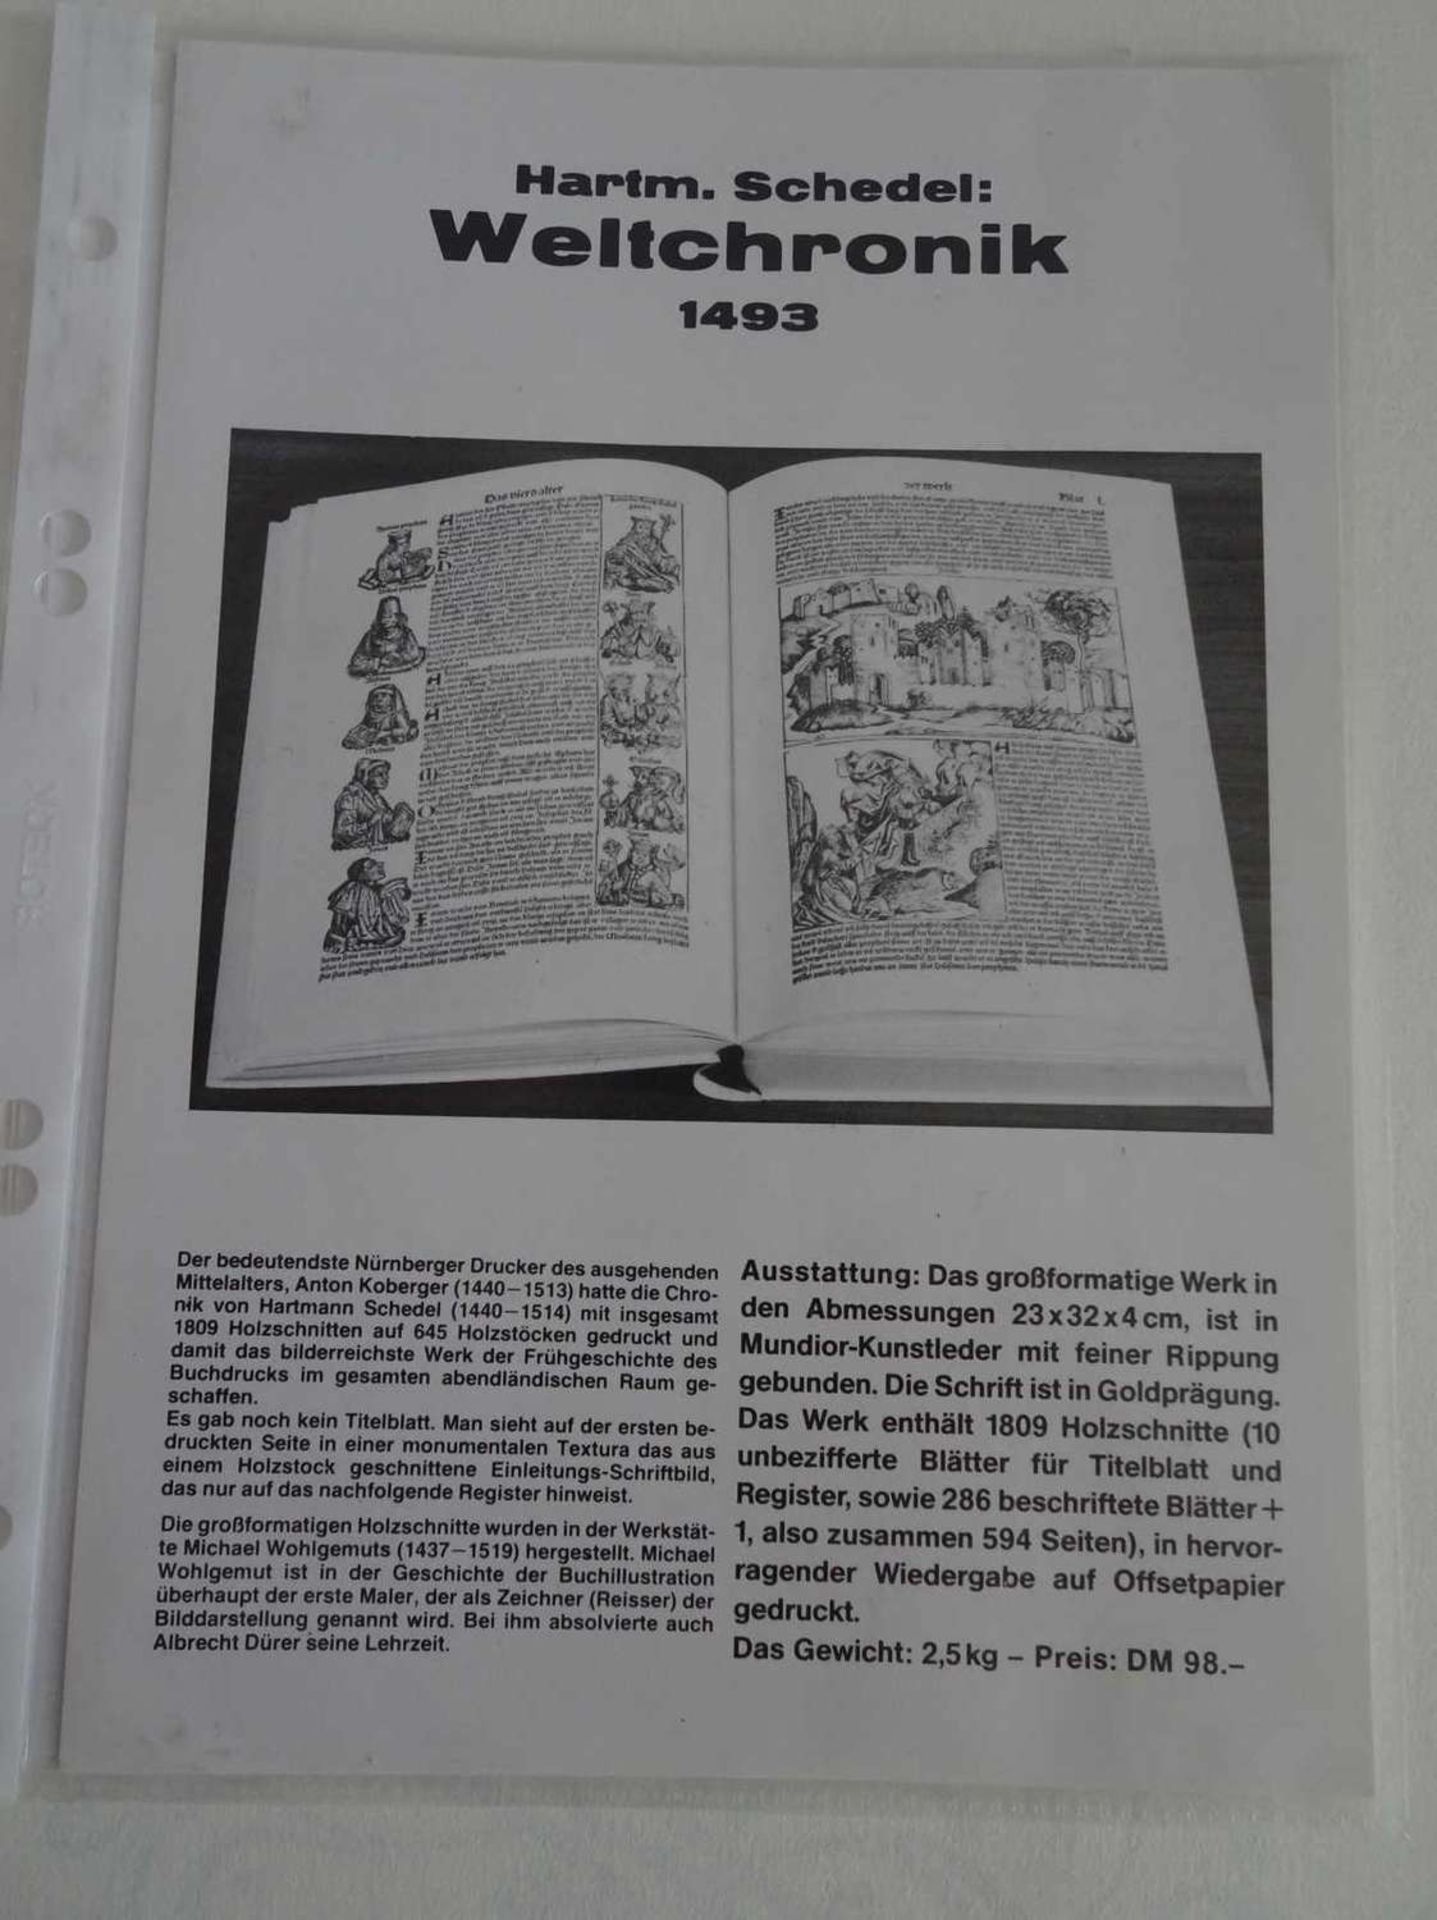 Hartmann Schedel - Weltchronik 1493. Nachdruck. Guter Zustand. - Image 2 of 2